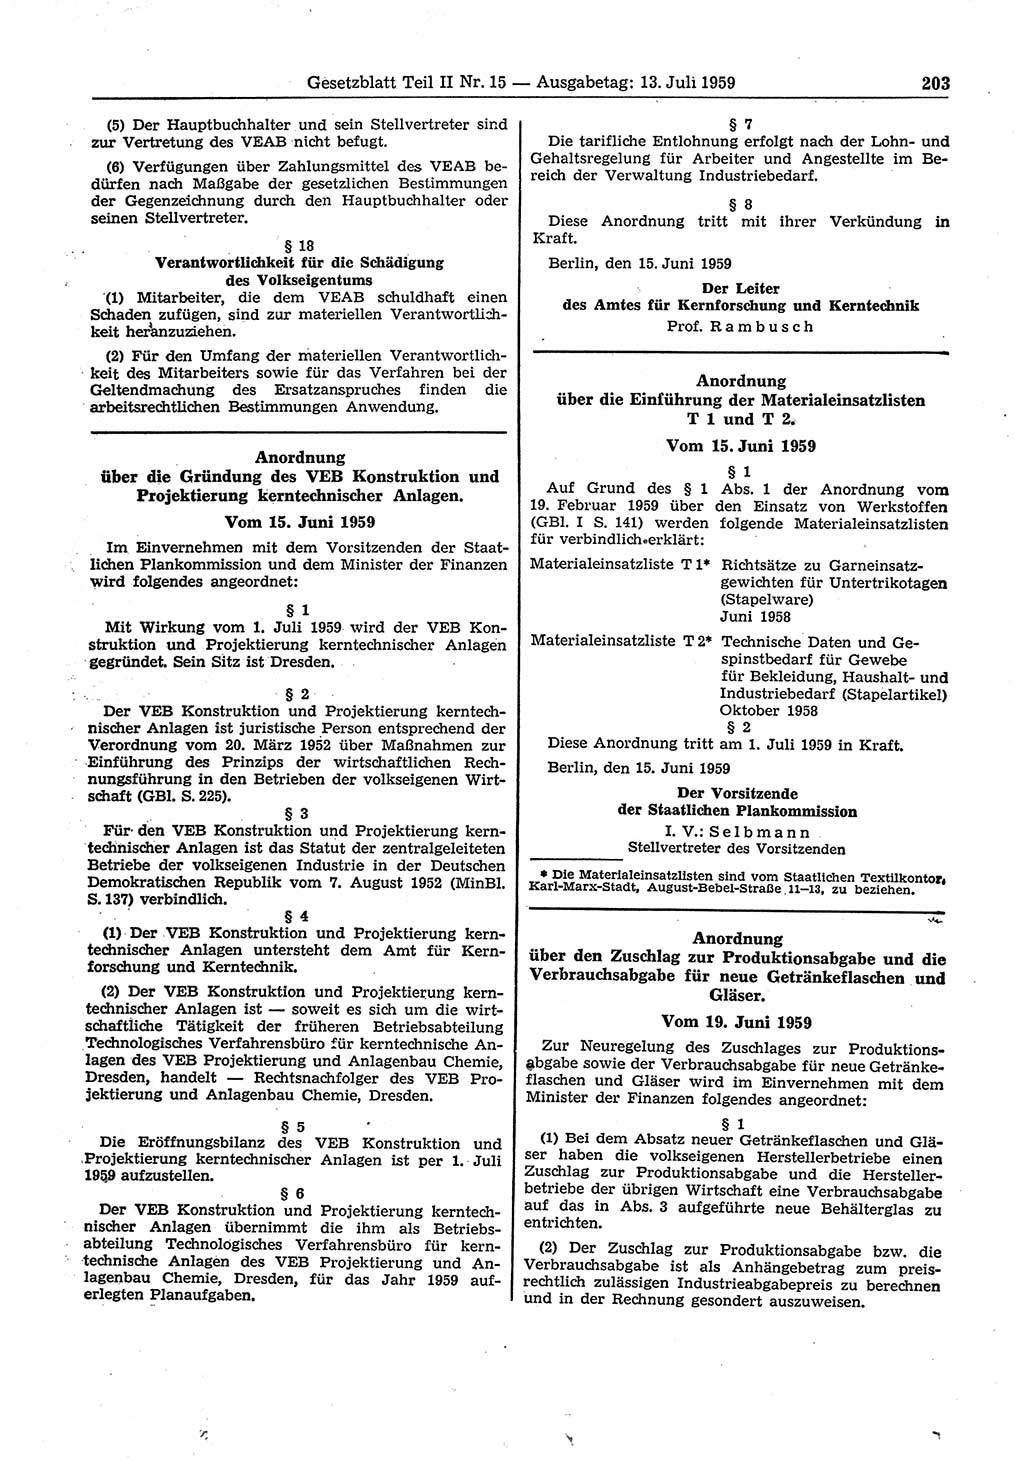 Gesetzblatt (GBl.) der Deutschen Demokratischen Republik (DDR) Teil ⅠⅠ 1959, Seite 203 (GBl. DDR ⅠⅠ 1959, S. 203)